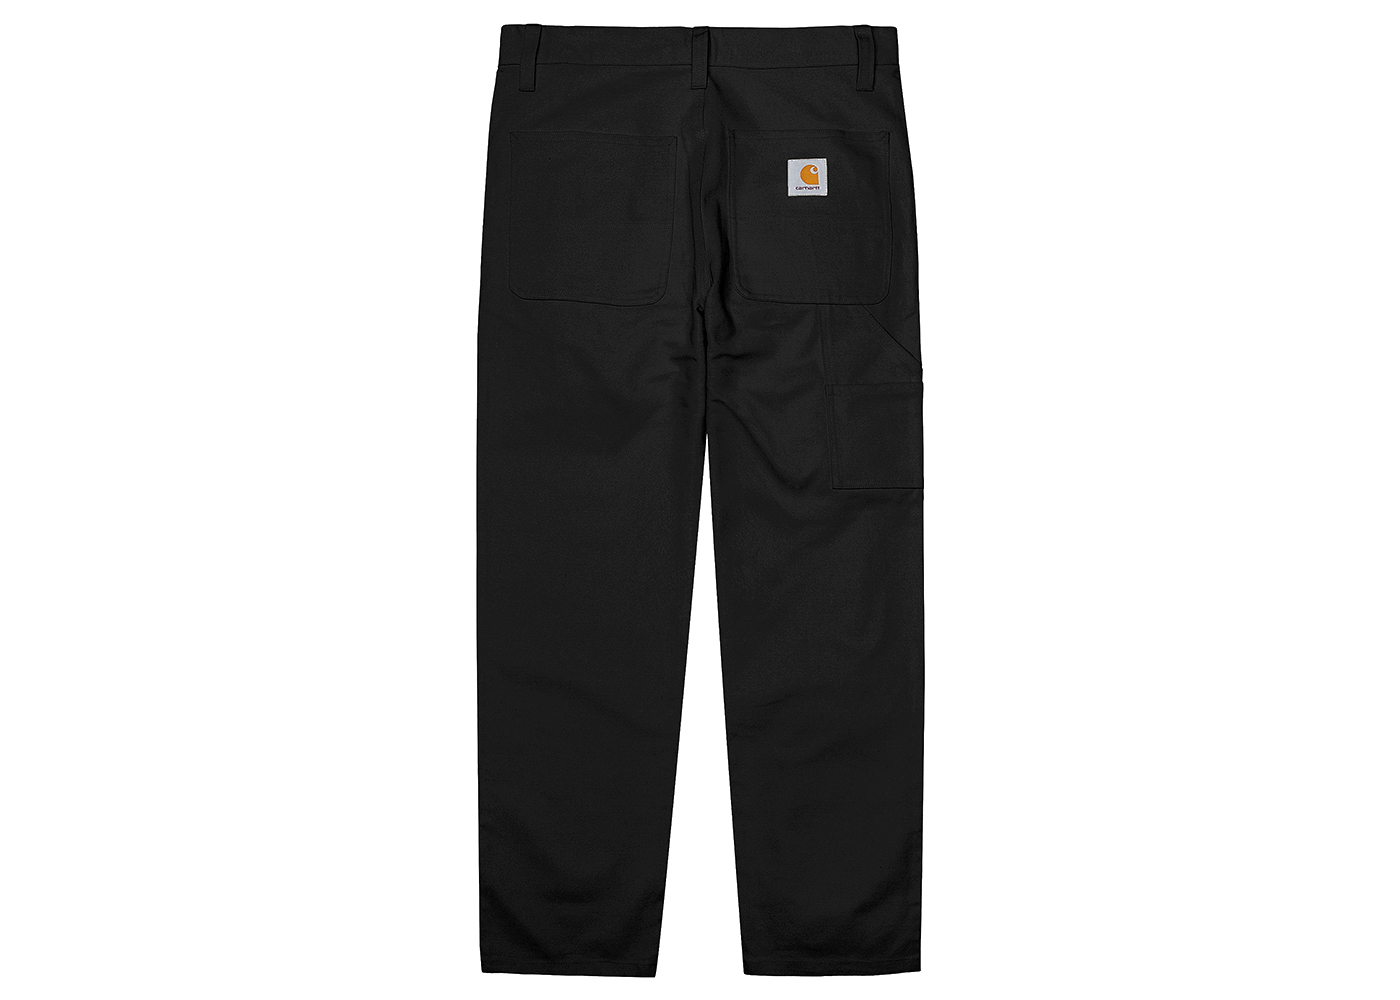 Carhartt WIP x Kunichi Nomura Chino Pants Black - FW22 - US